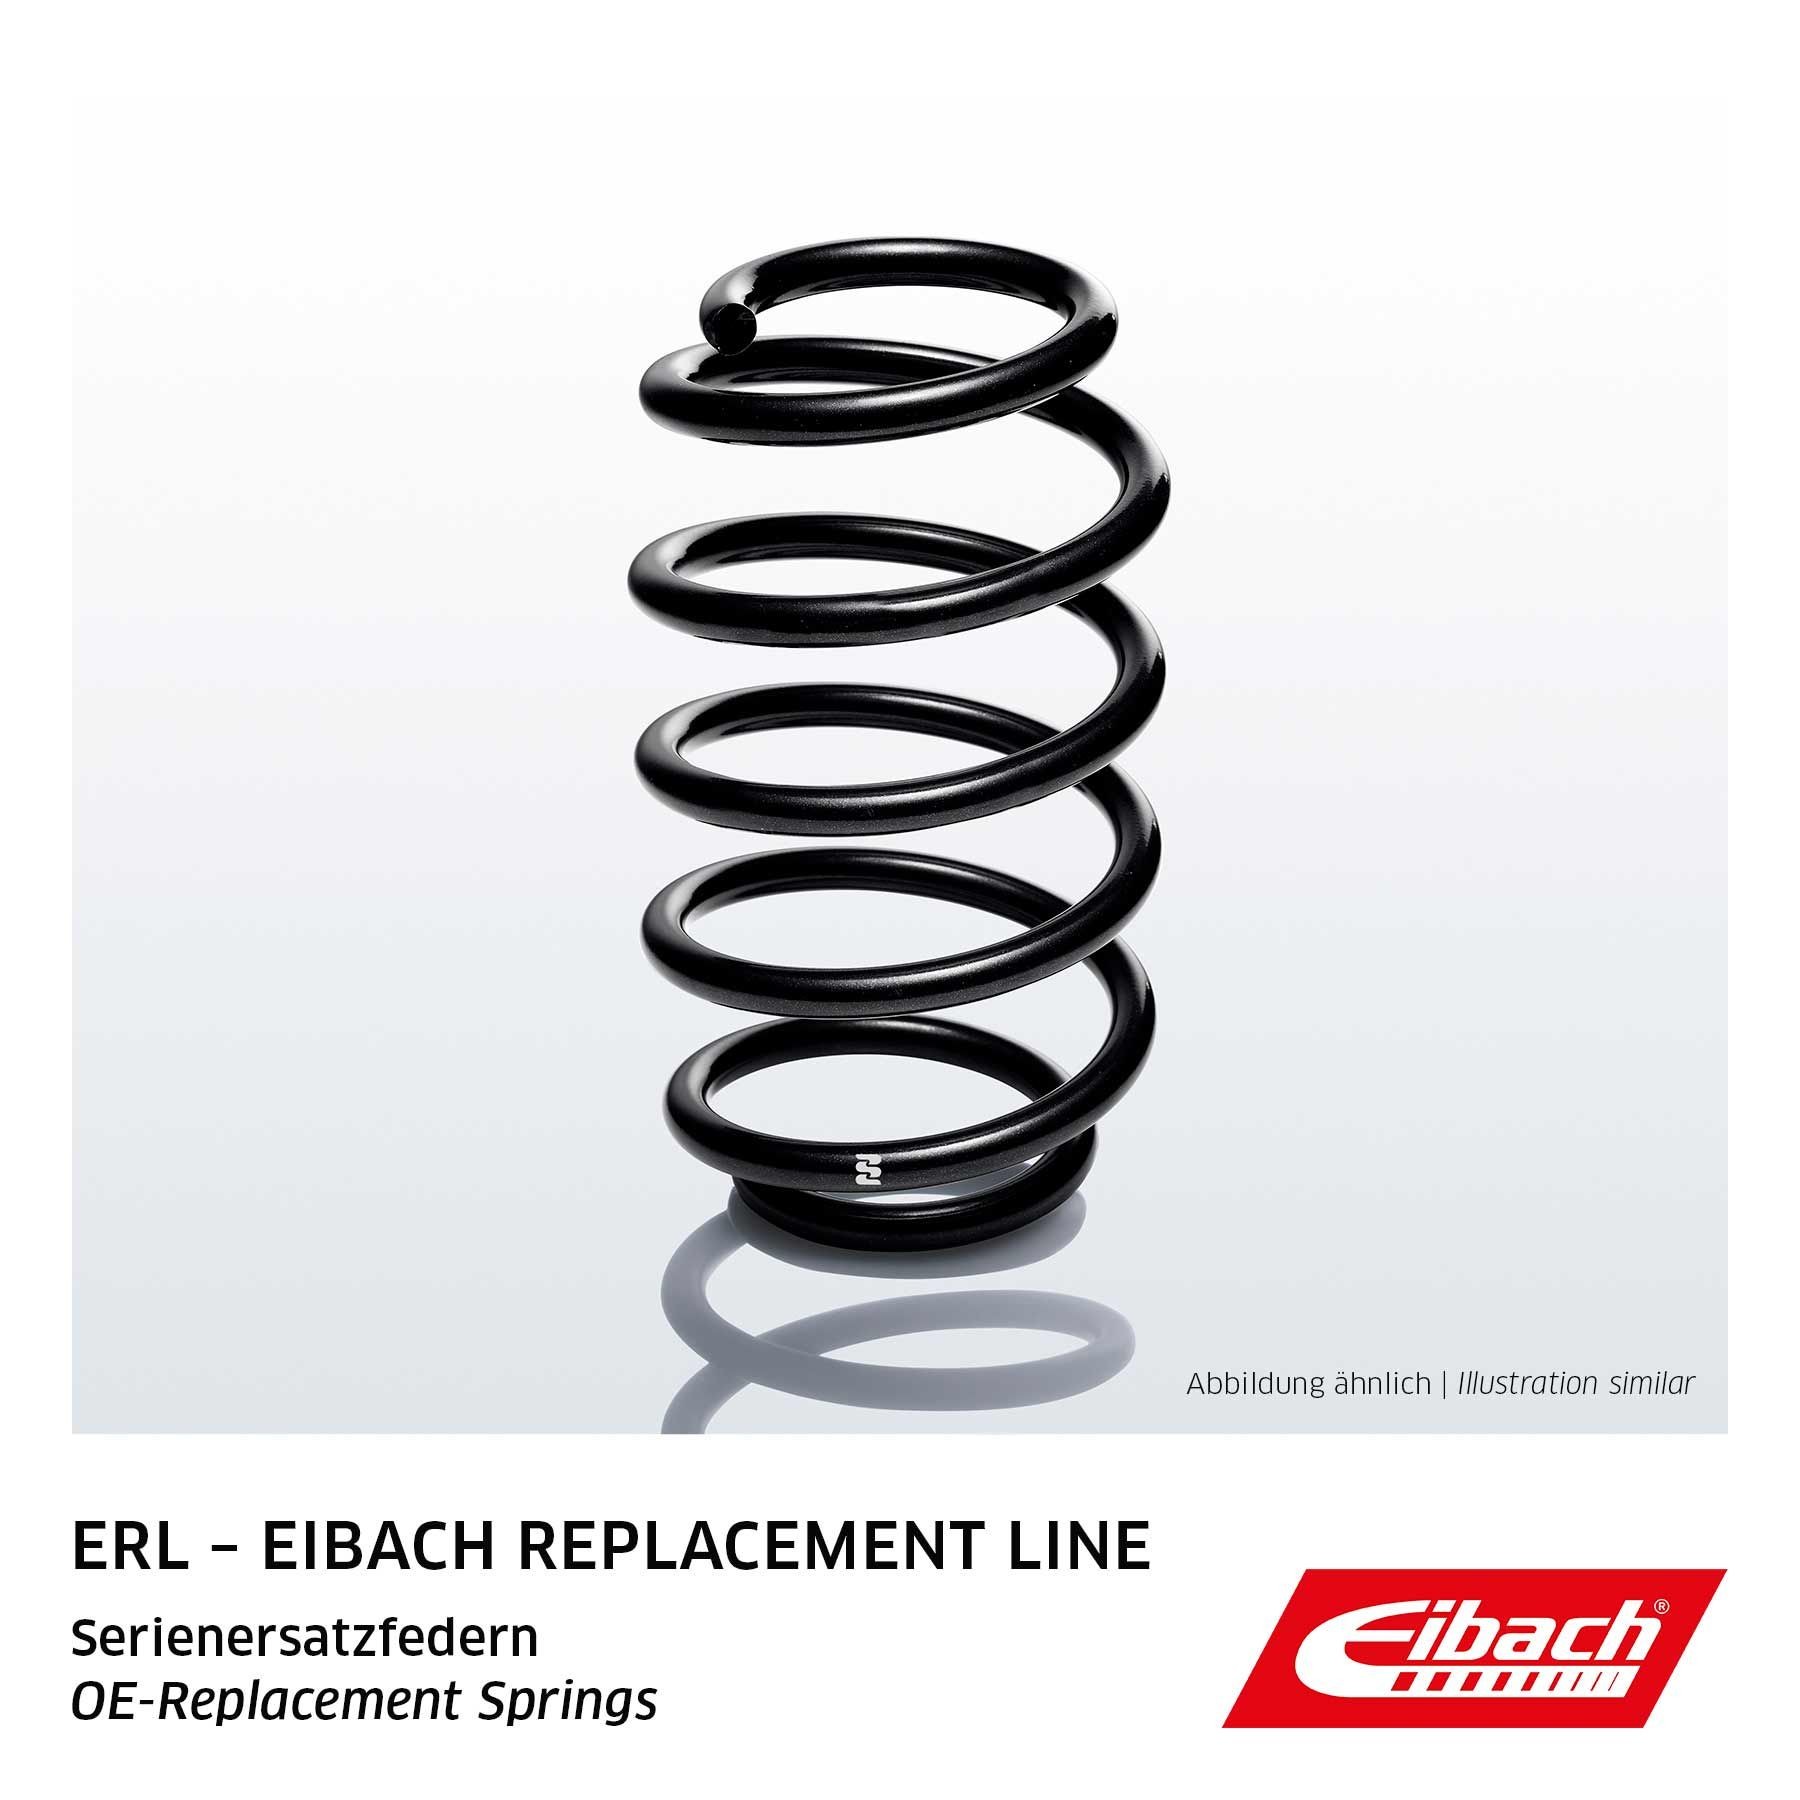 EIBACH Single Spring ERL (OE-Replacement) R10069 Molle ammortizzatori Assale anteriore, Molla ad elica, per veicoli con autotelaio standard